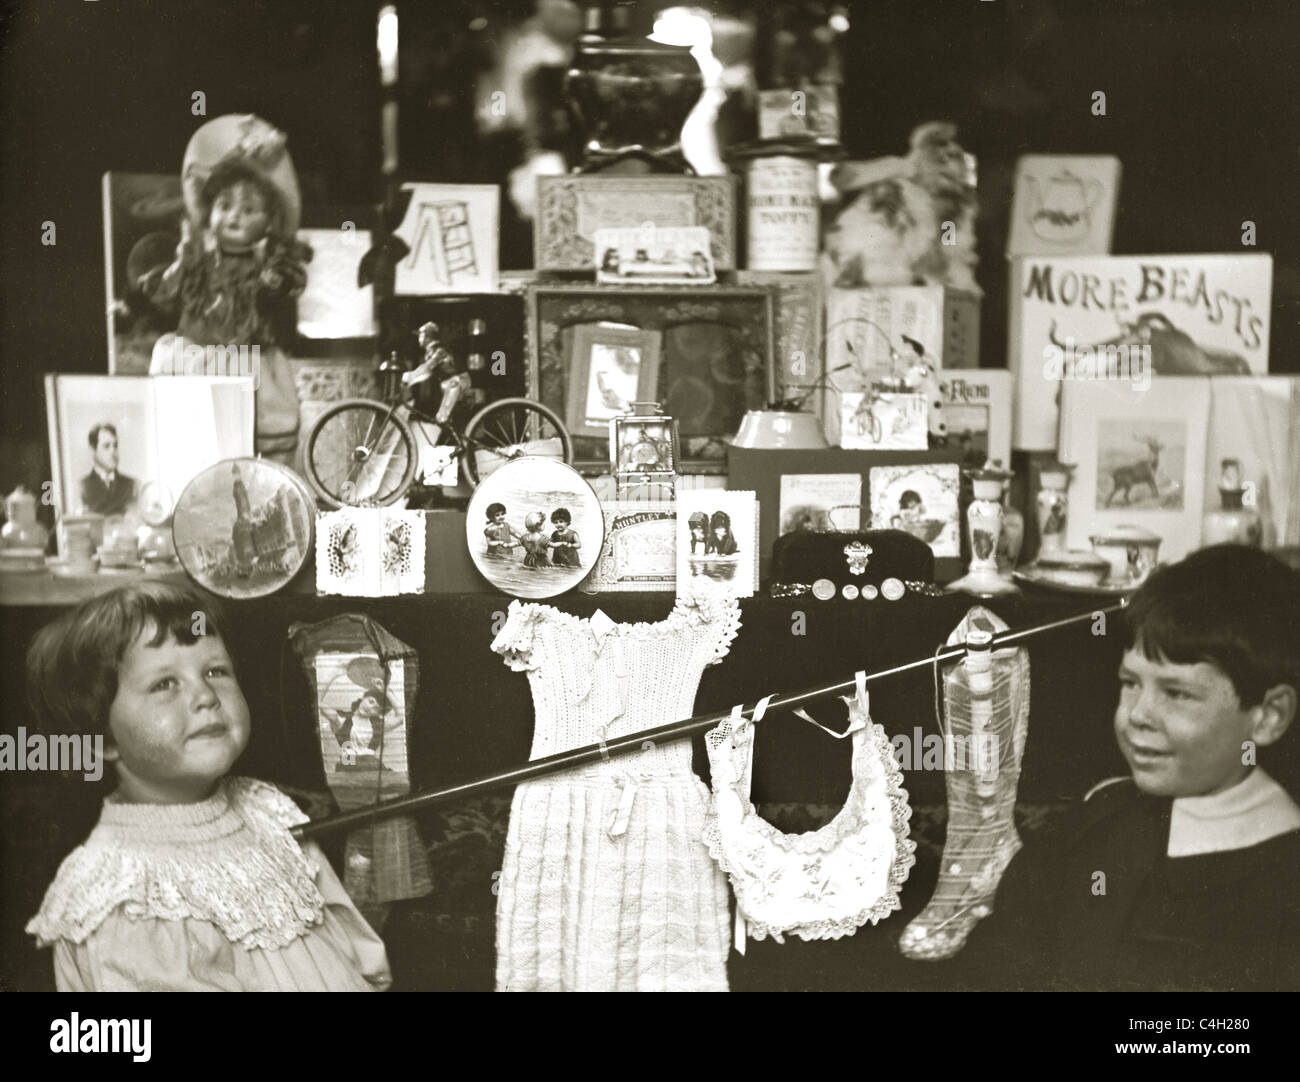 Fotografia originale di bambini edoardiani o vittoriani che guardano nella vetrina / negozio di fronte di un negozio di giocattoli, retrò circa 1890 1890's. Foto Stock